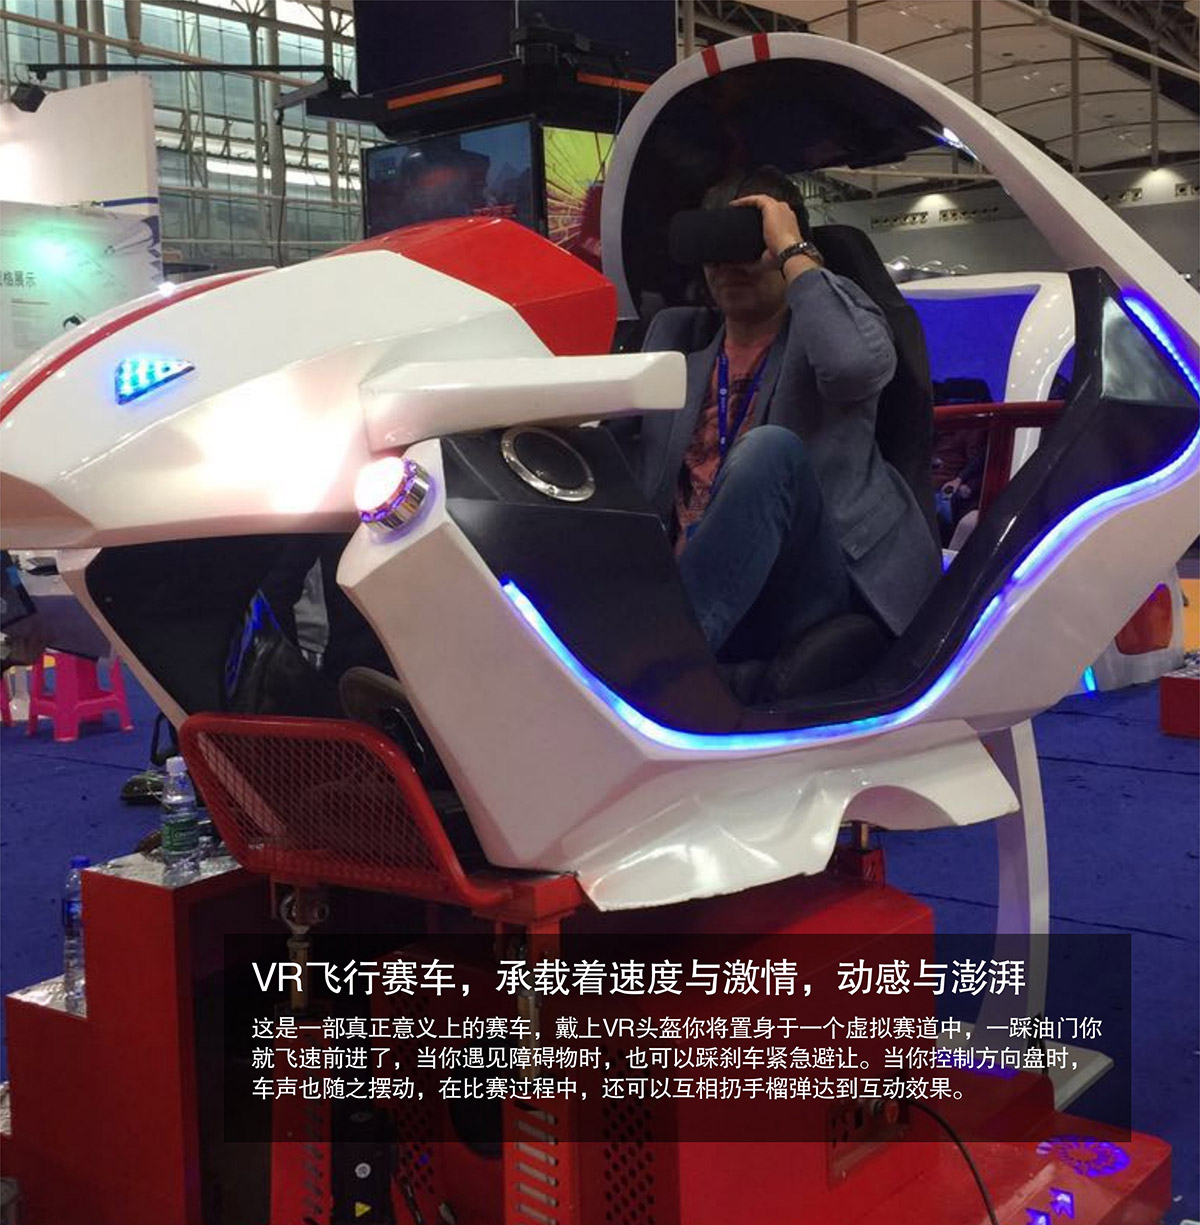 模拟安全VR飞行虚拟赛车速度与激情动感澎湃.jpg